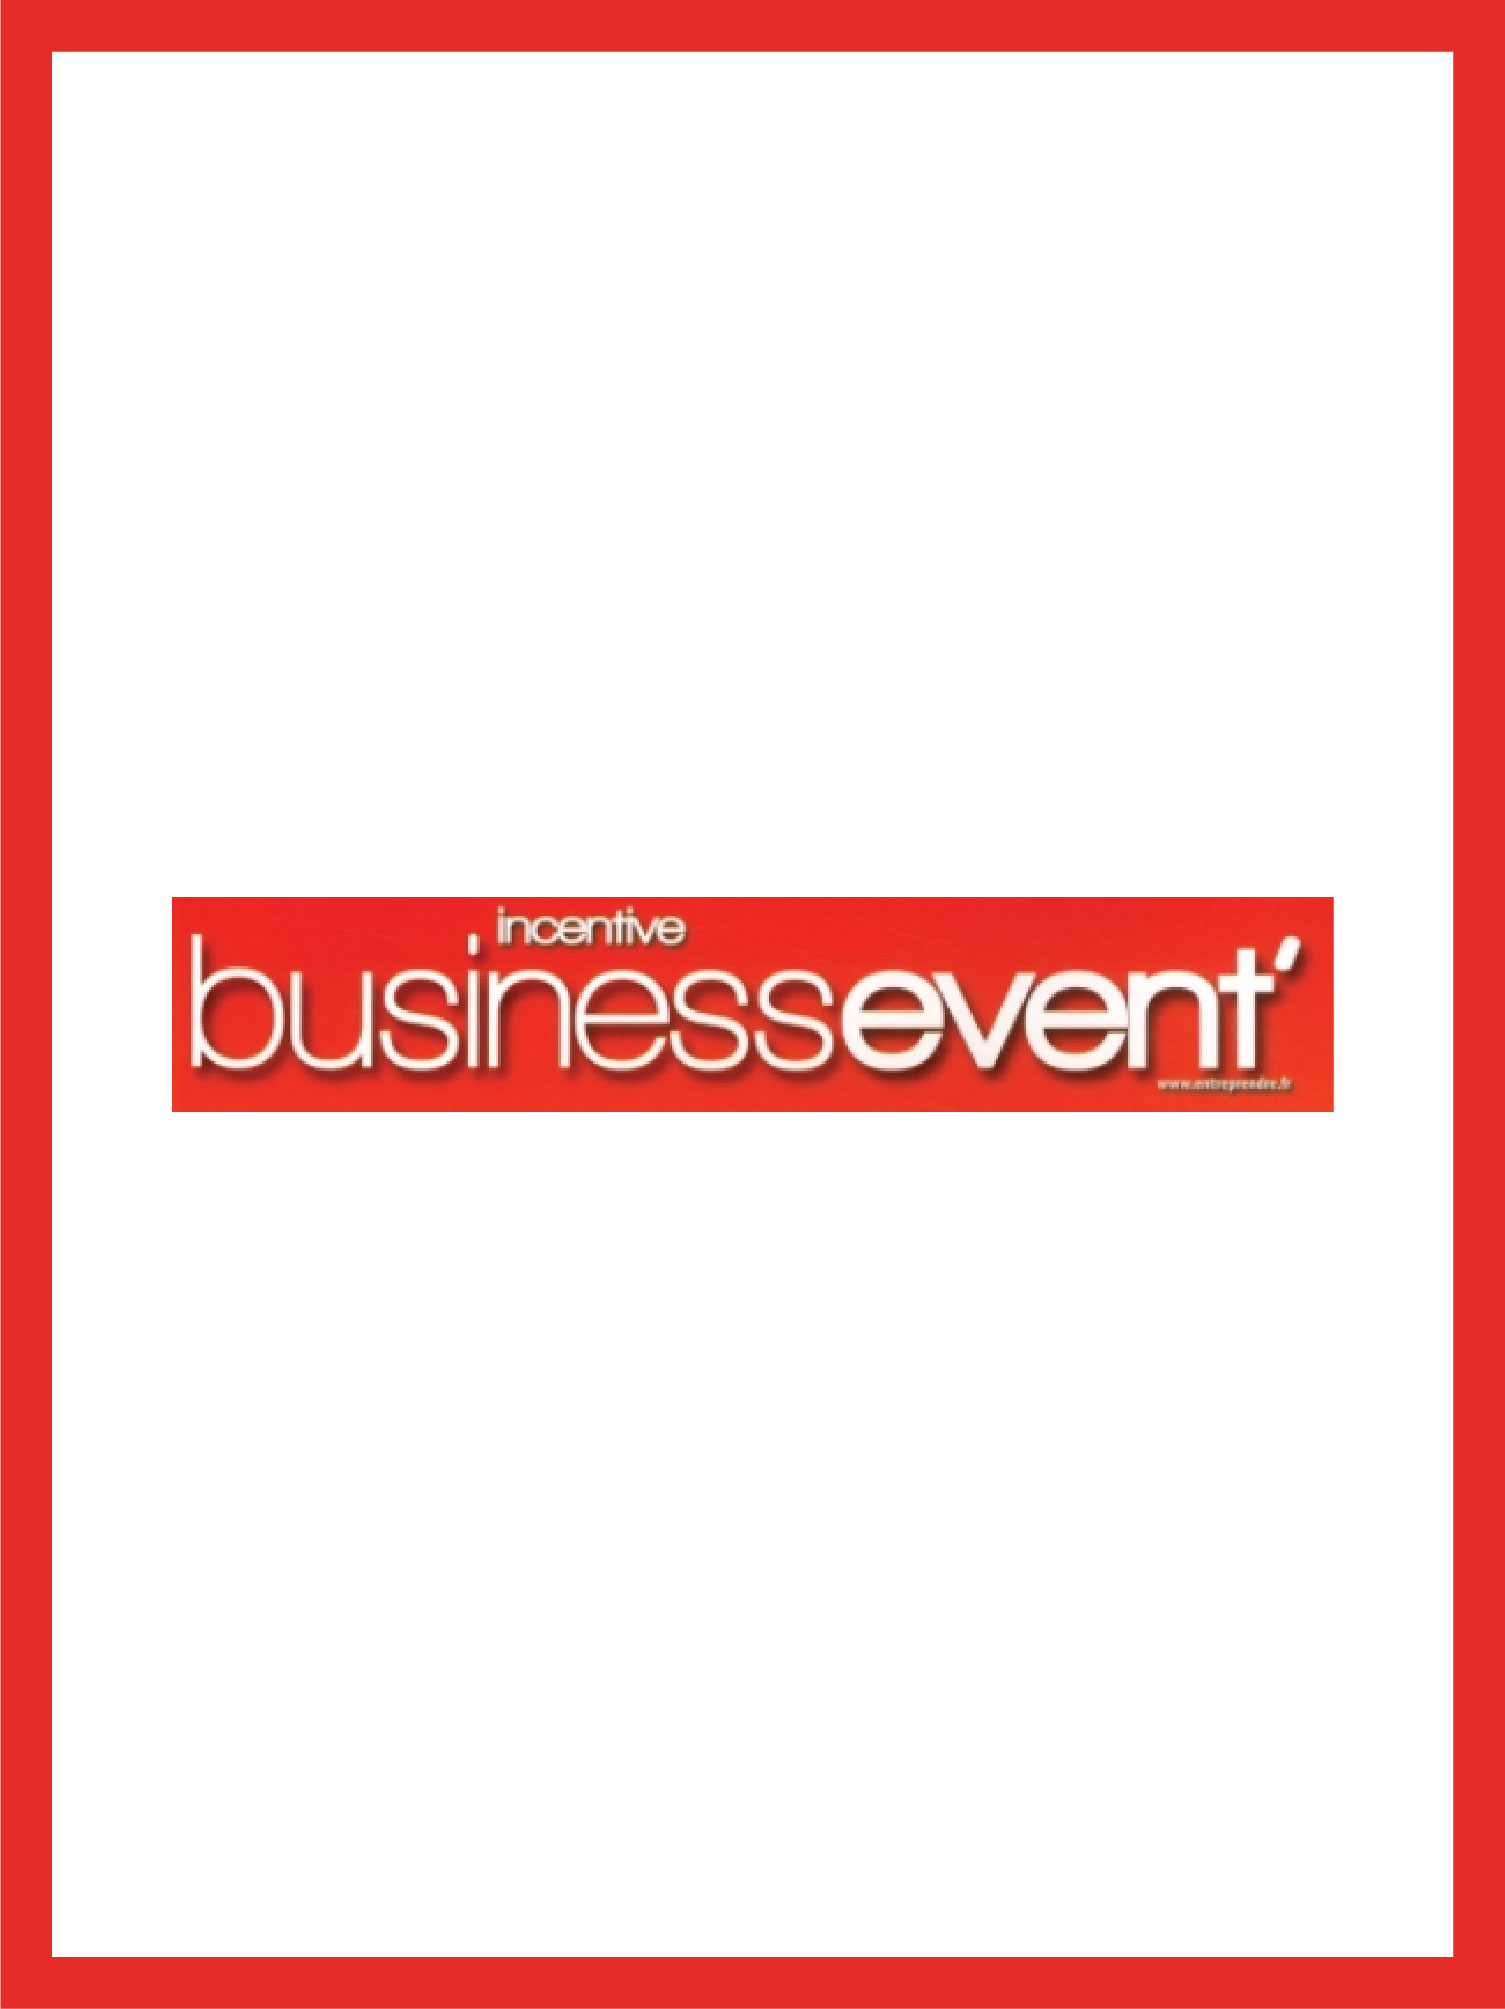 couverture et logo magazine incentive business event